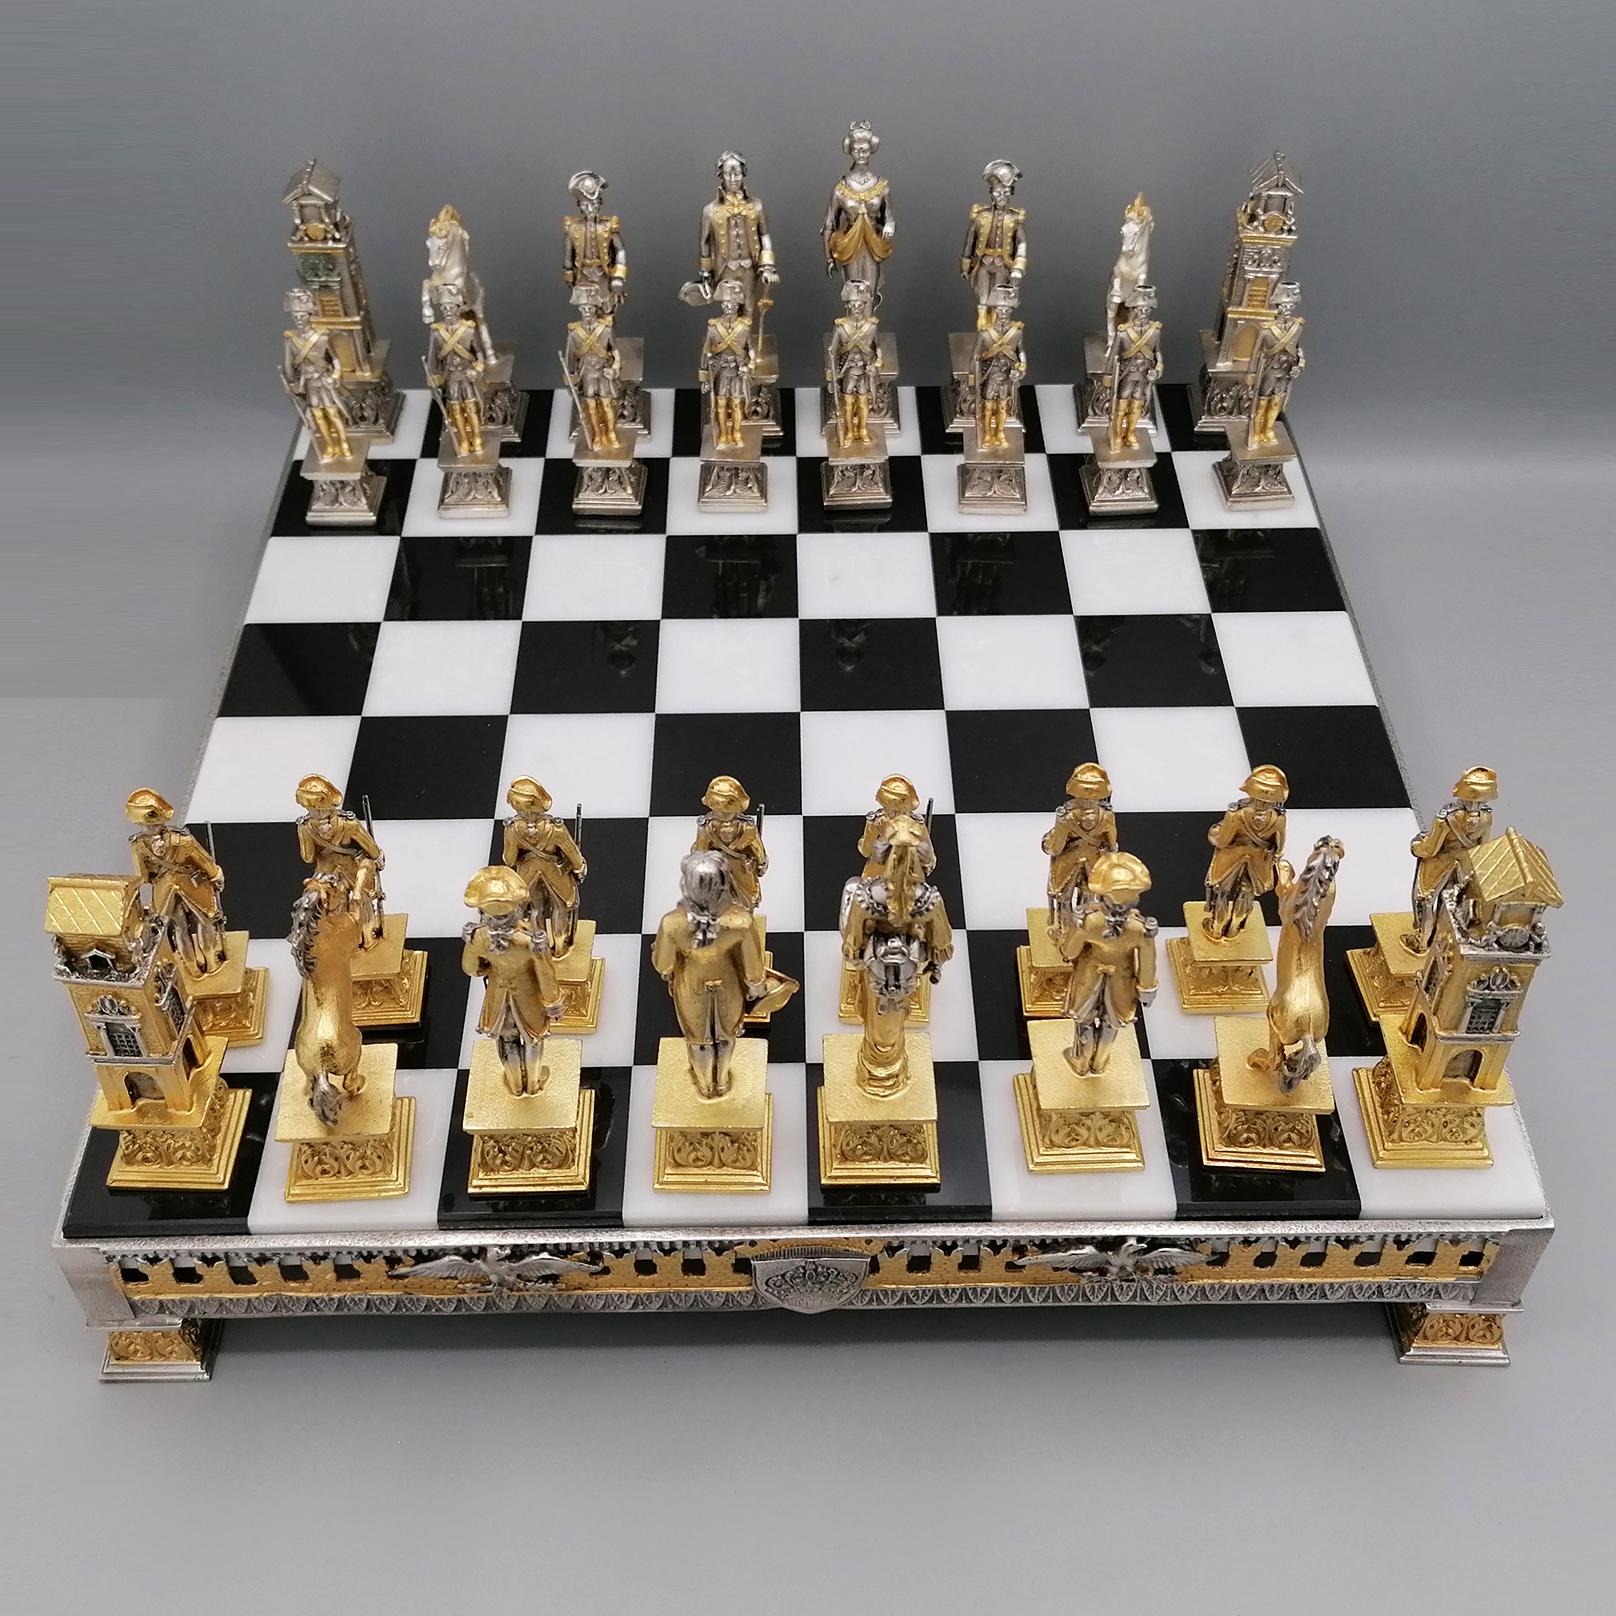 Jeu d'échecs de style Empire.
Le jeu d'échecs a été fabriqué en laiton selon la technique de la fonte.
Il est ensuite argenté et plaqué or épais avec une finition bicolore.
La base est toujours en laiton bicolore avec des frises d'armoiries nobles